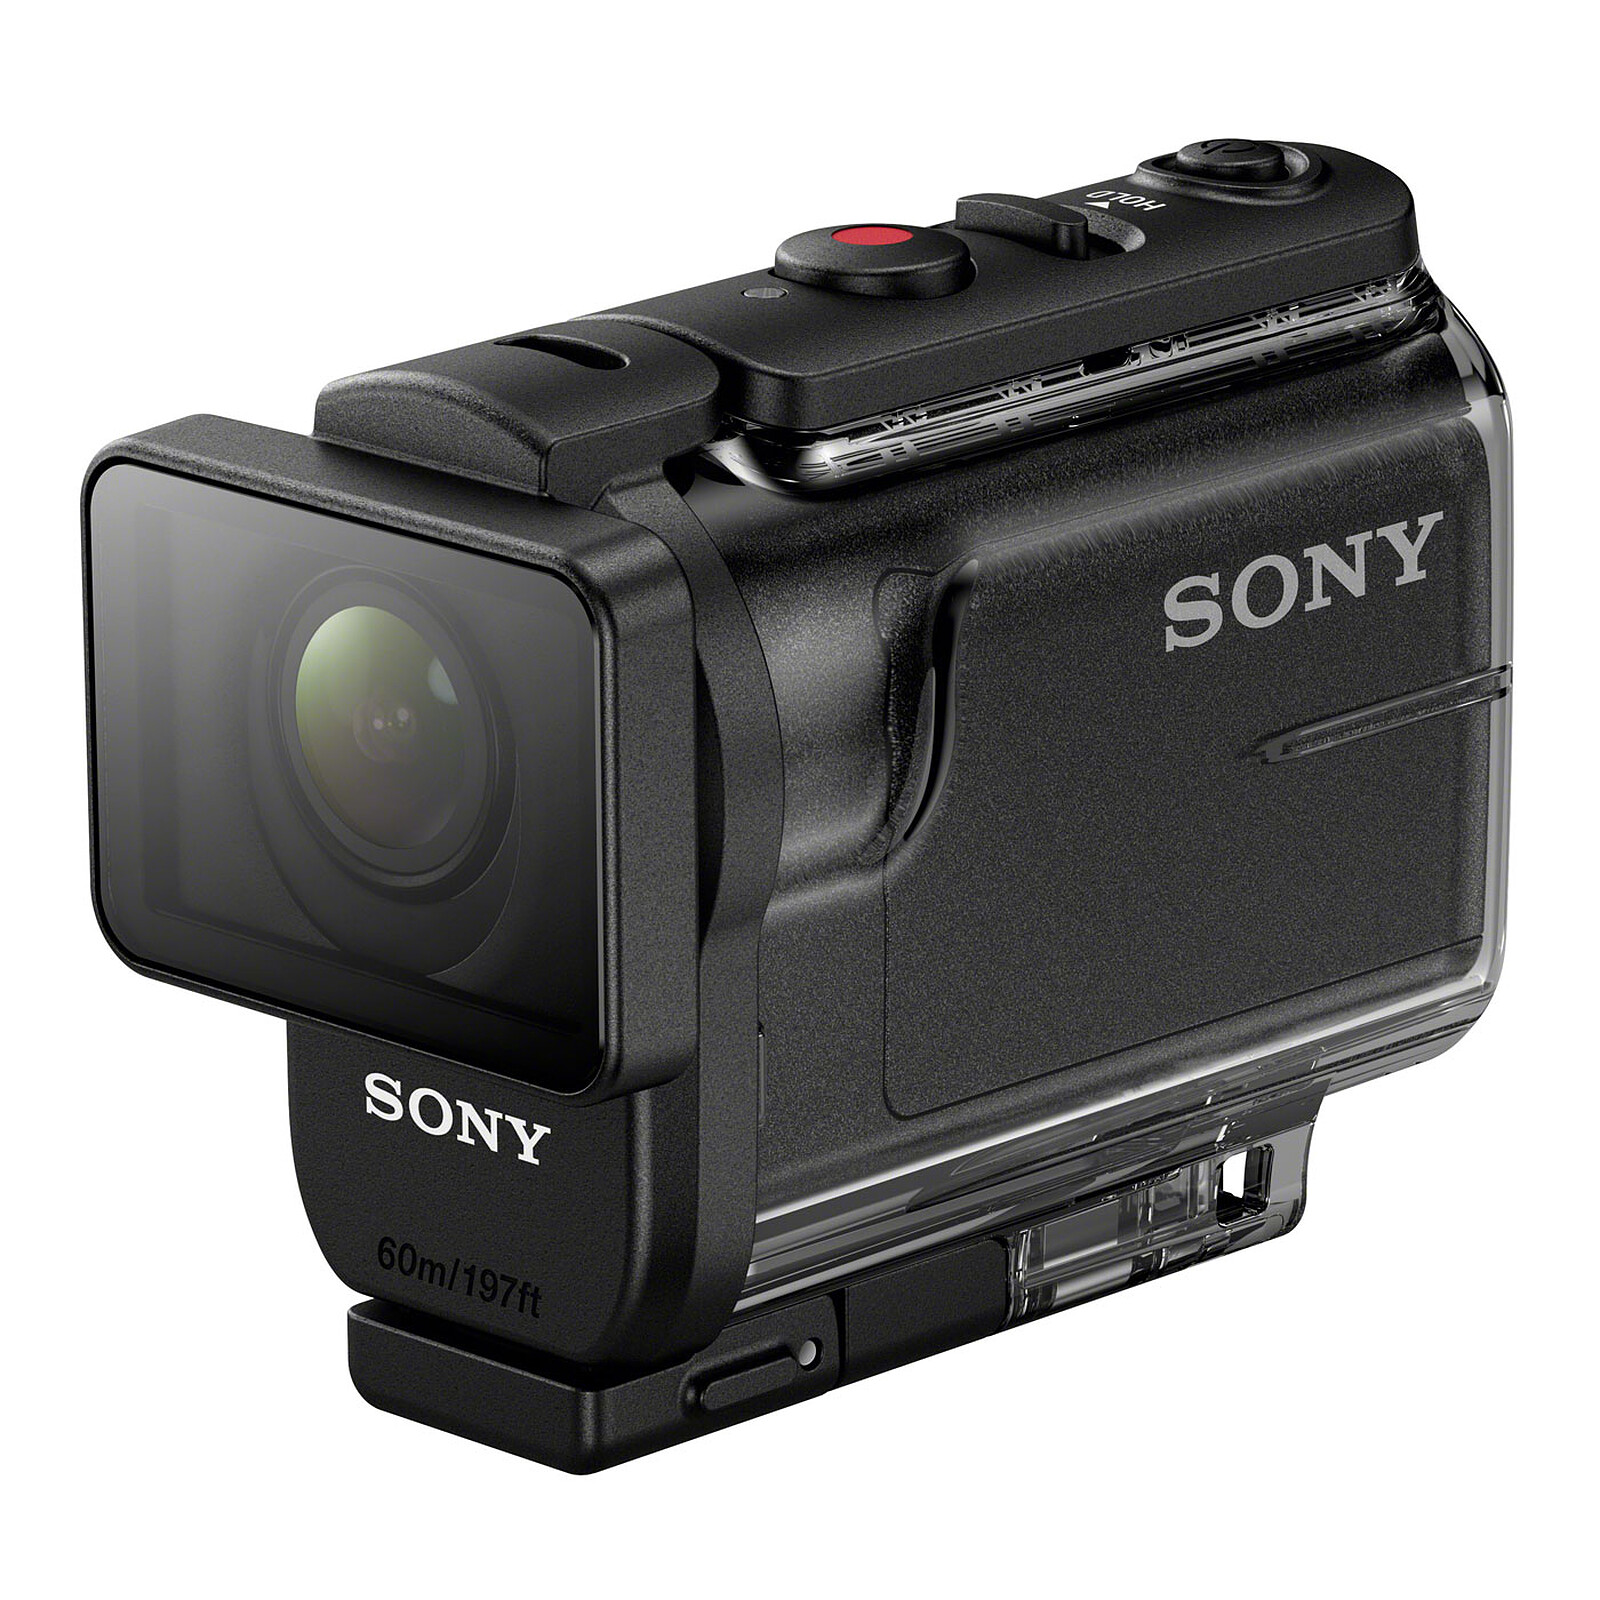 Mini-trépied de voyage pour Sony Action Cam HDR-AS50